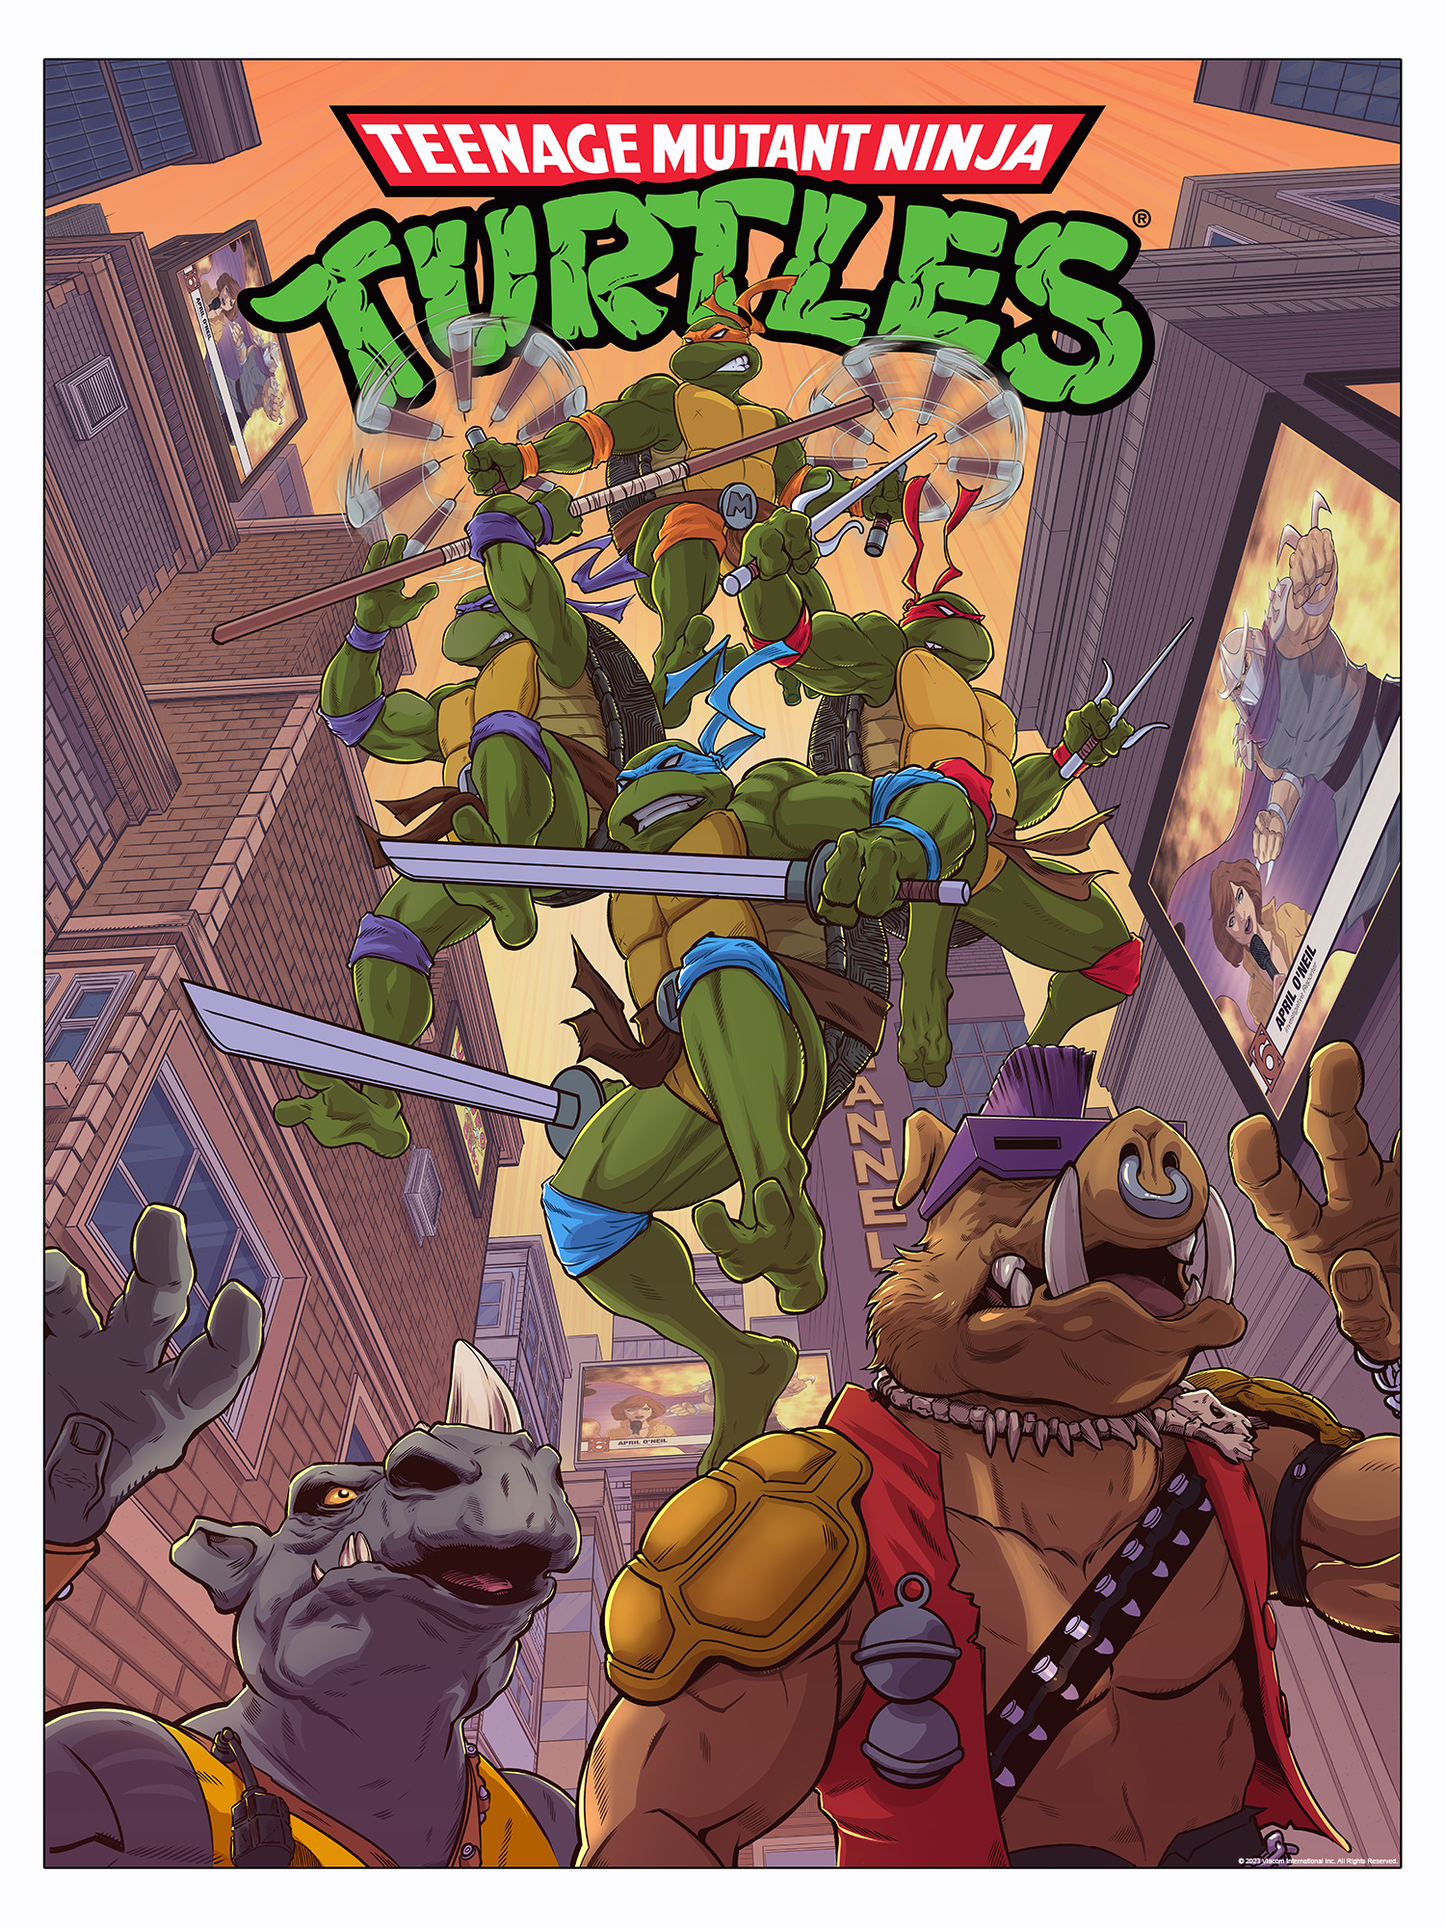 Mike McGee "Teenage Mutant Ninja Turtles"